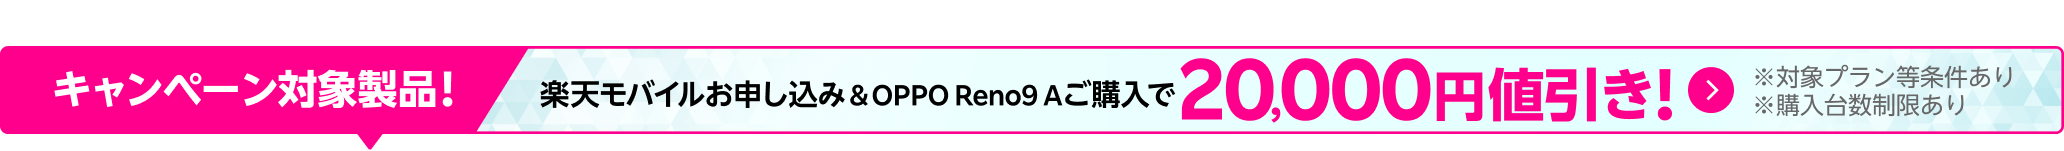 楽天モバイルお申し込み＆OPPO Reno9 Aご購入で20,000円値引き